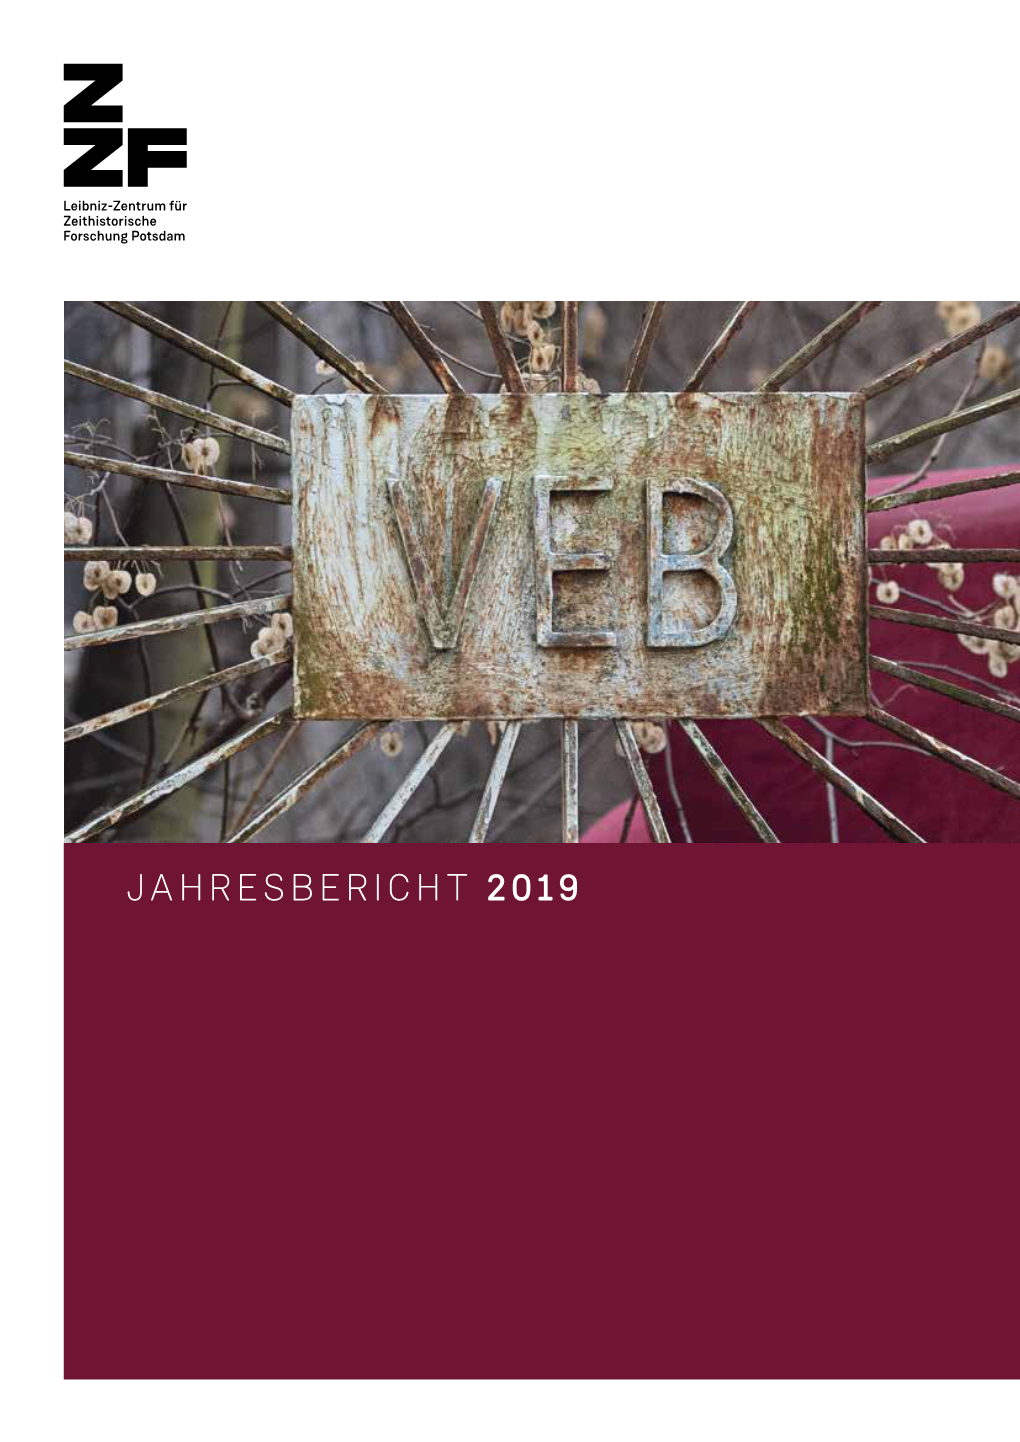 JAHRESBERICHT 2019 Das Leibniz-Zentrum Für Zeithistorische Forschung Erforscht Die Deutsche Und Europäische Zeitgeschichte Im 20